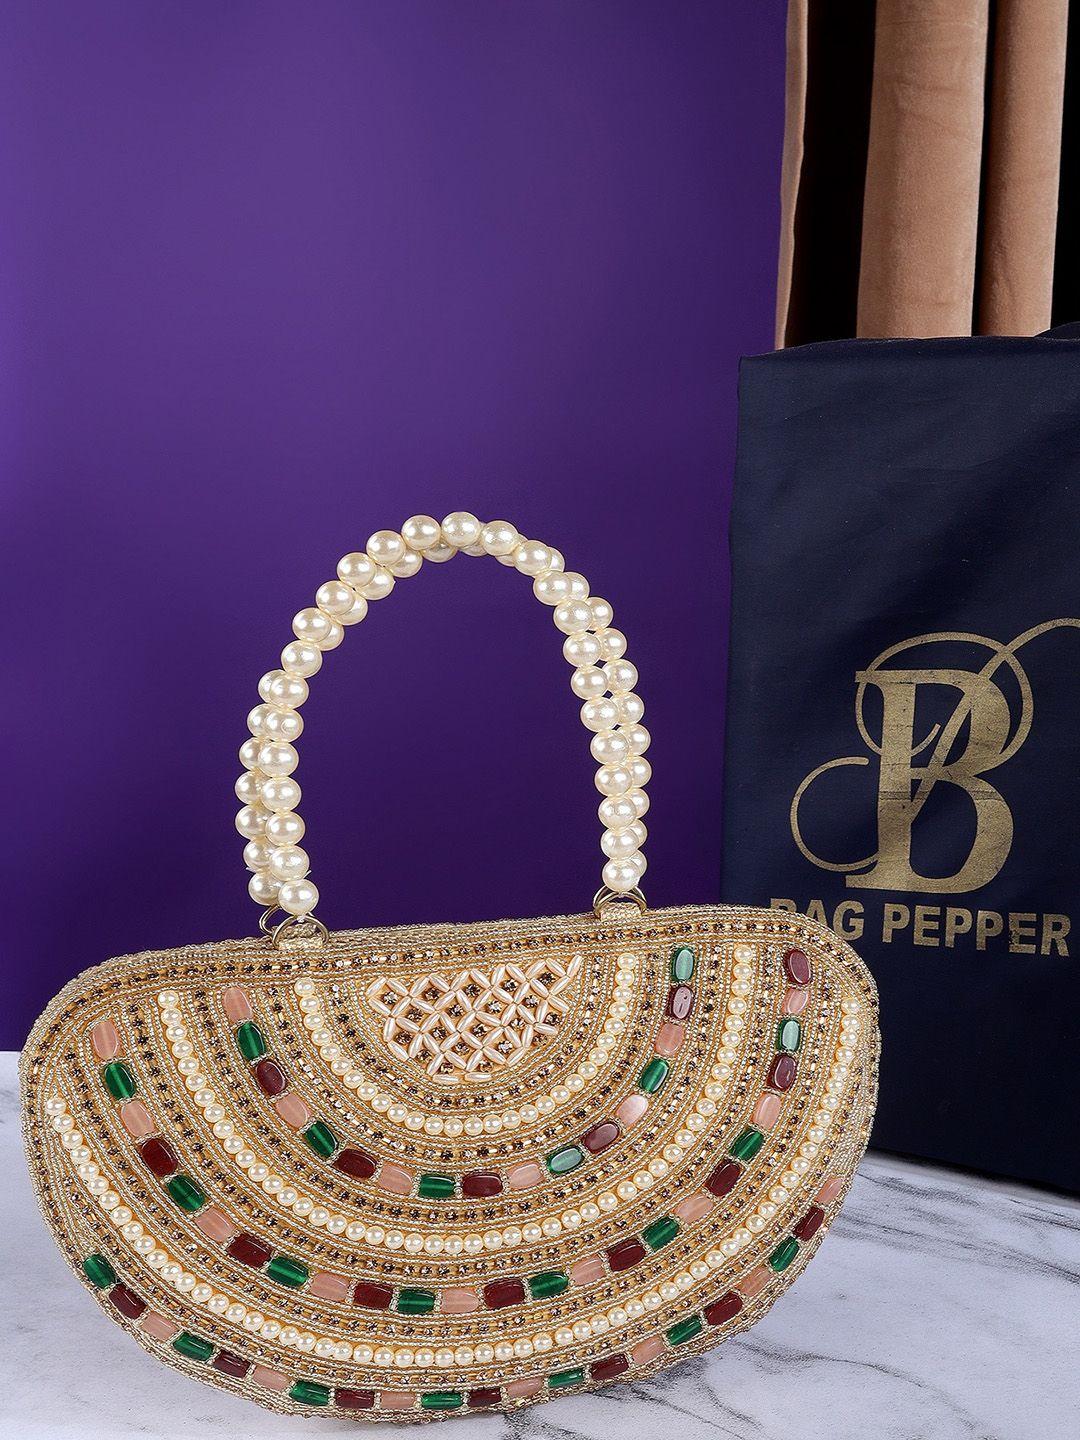 bag pepper gold-toned embellished pu structured handheld bag